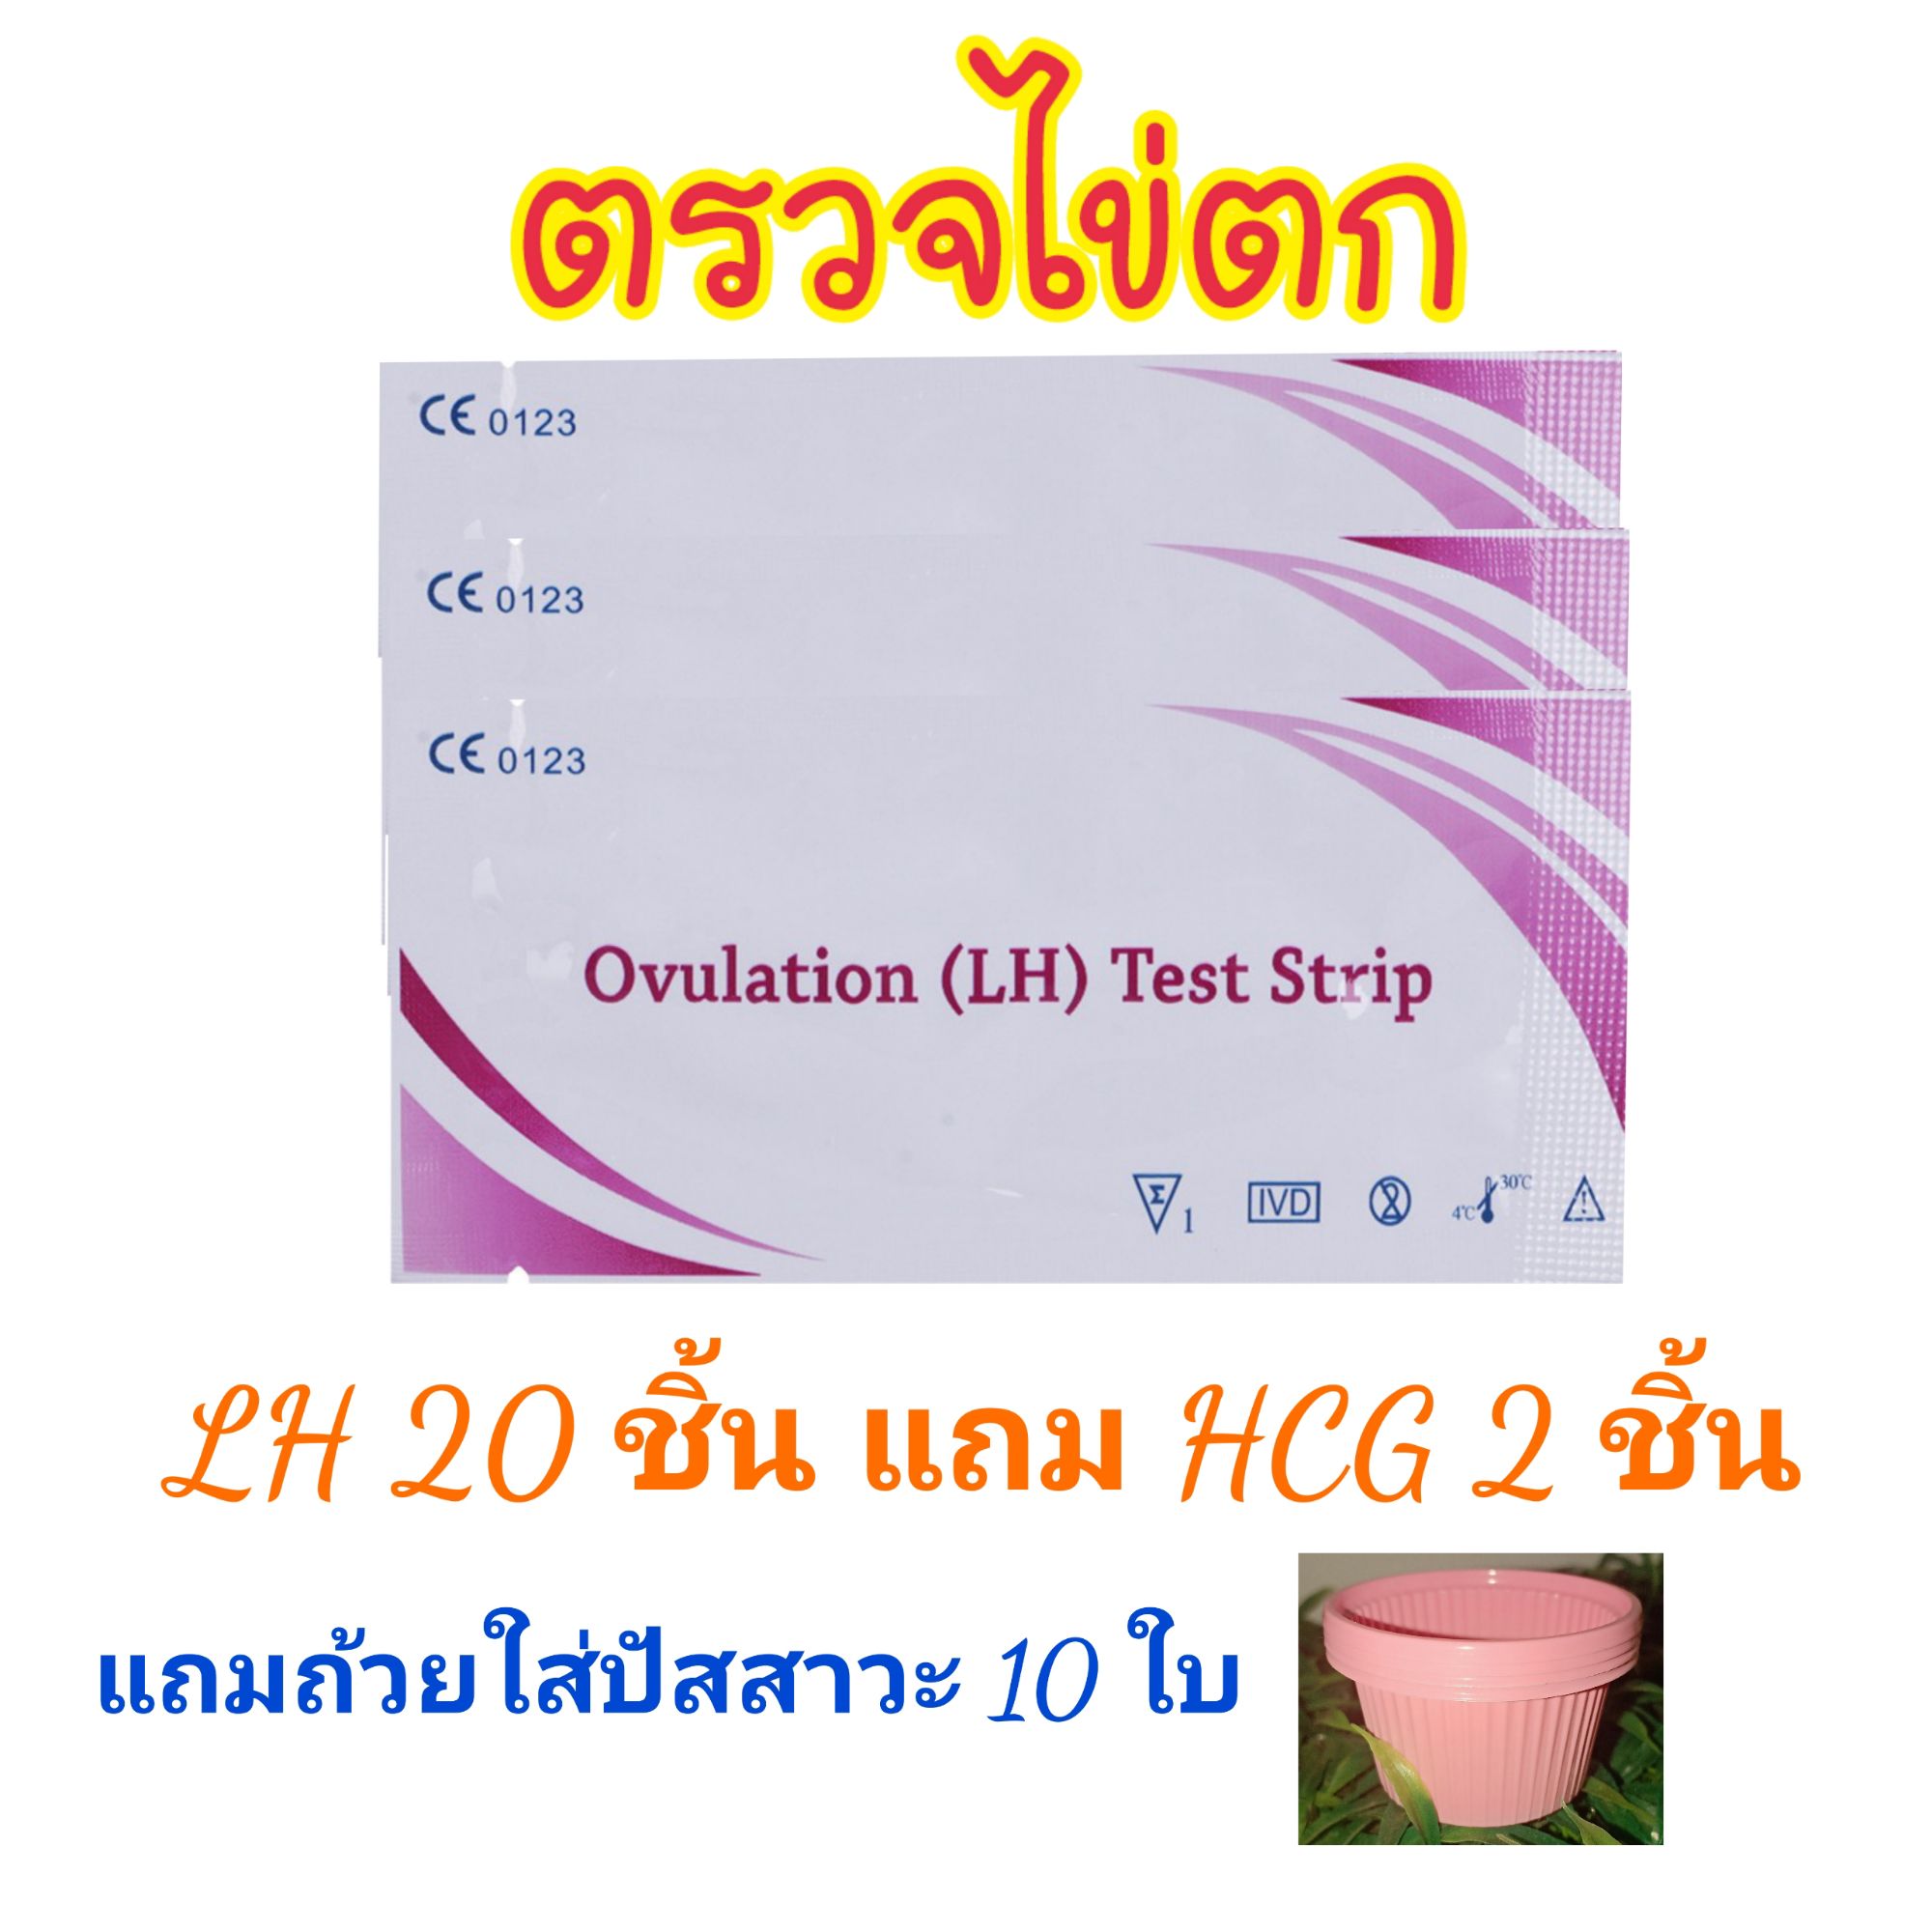 ที่ตรวจไข่ตก LH (Ovulation test strip) ชุด 20 ชิ้น แถมที่ตรวจครรภ์ 2 ชิ้น